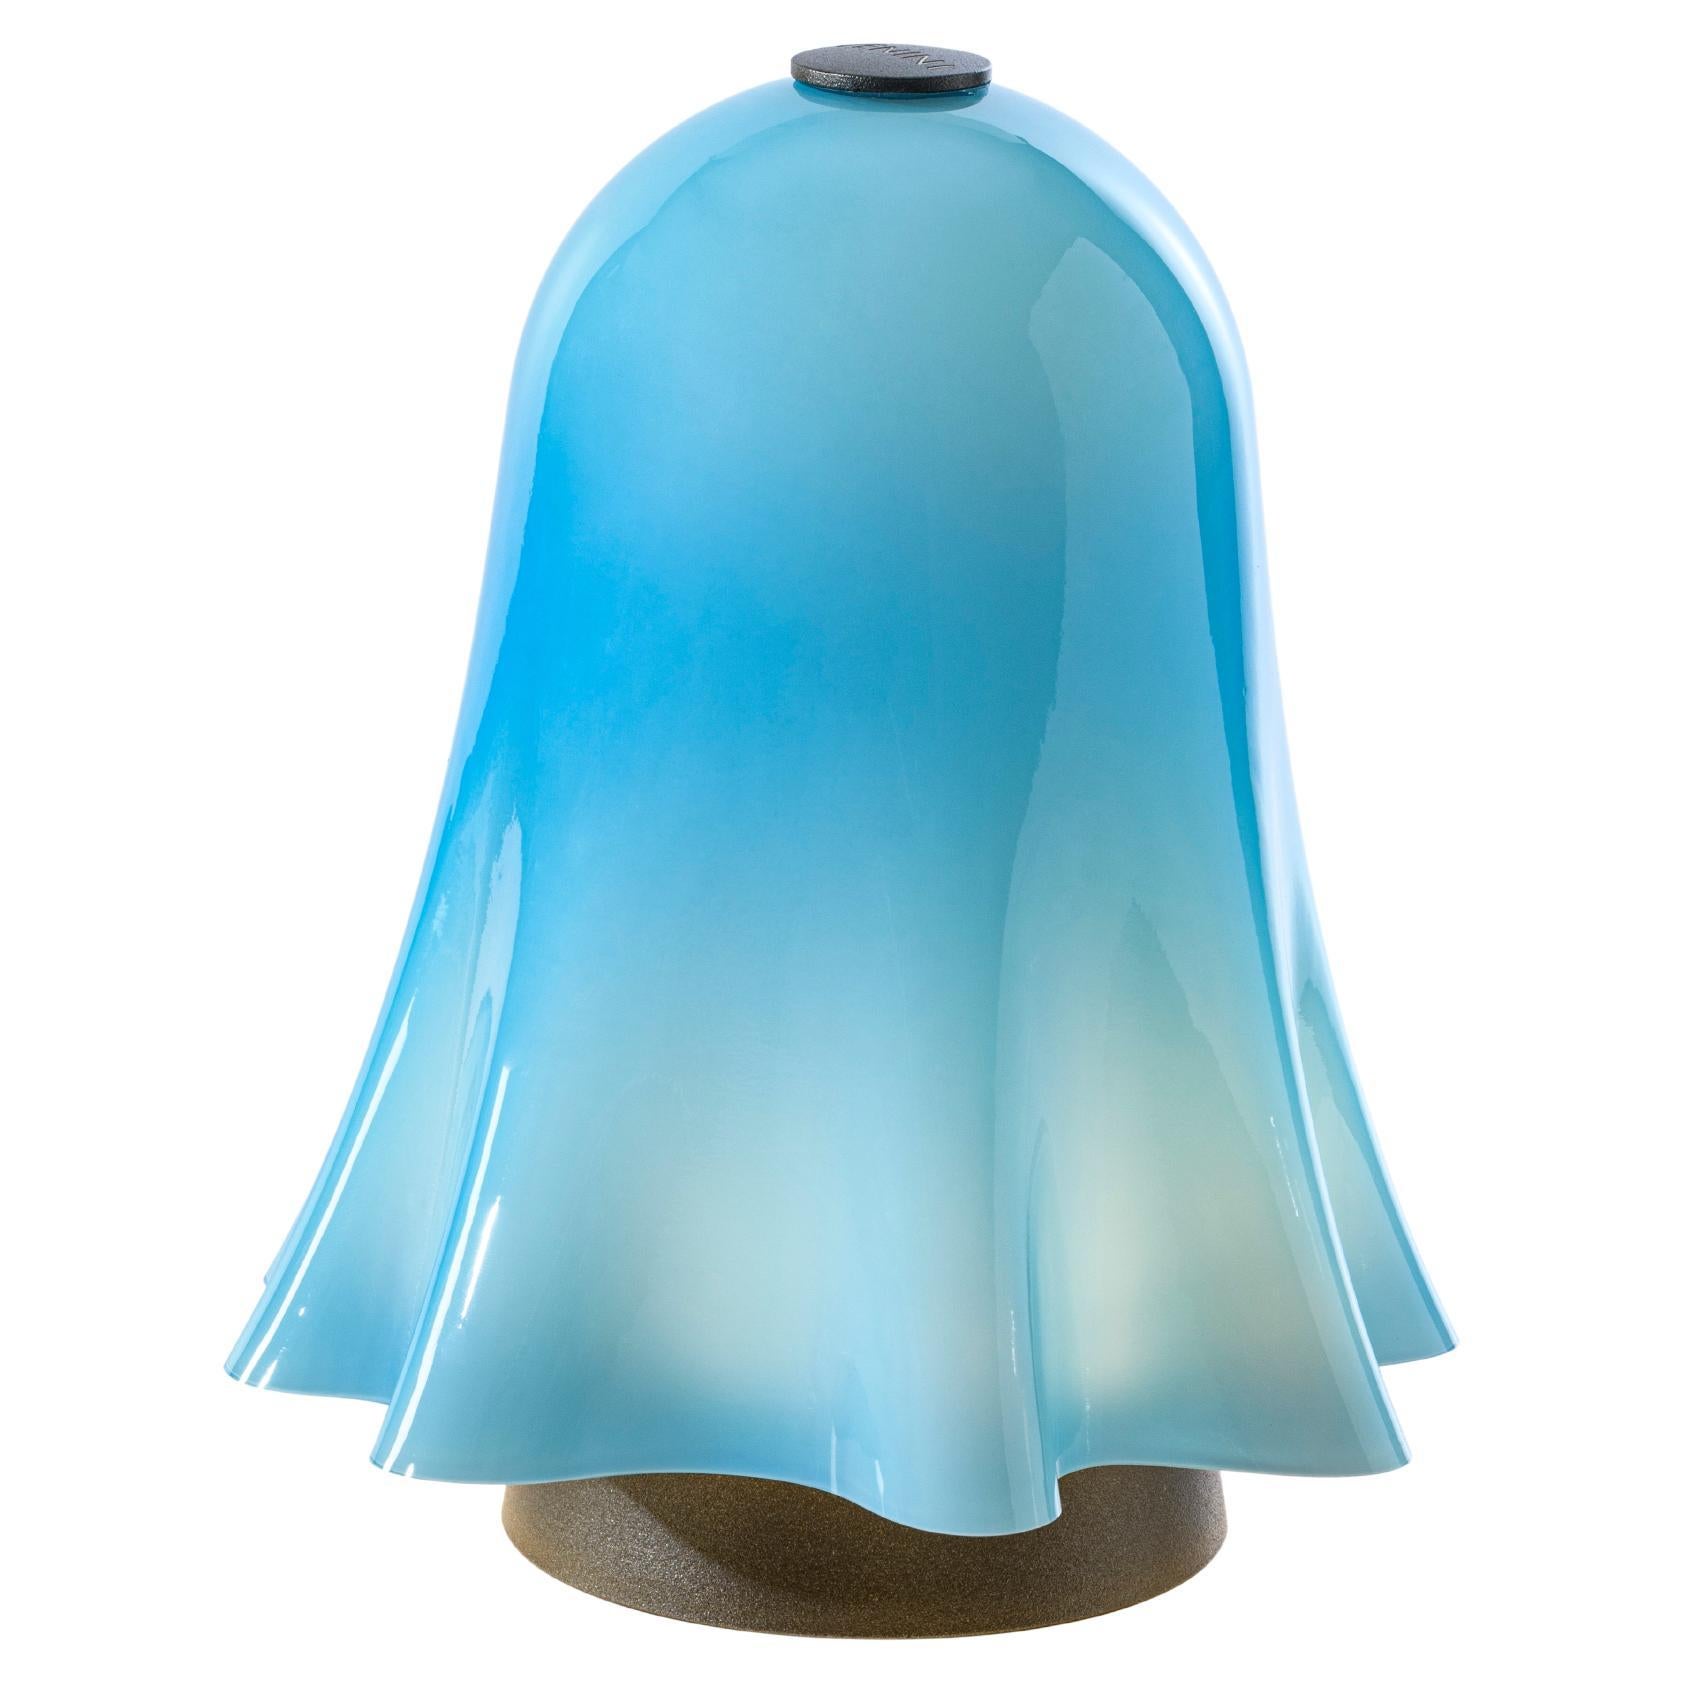 Lampe de table aigue-marine du 21e siècle rechargeable, à gradation, Fantasmino 